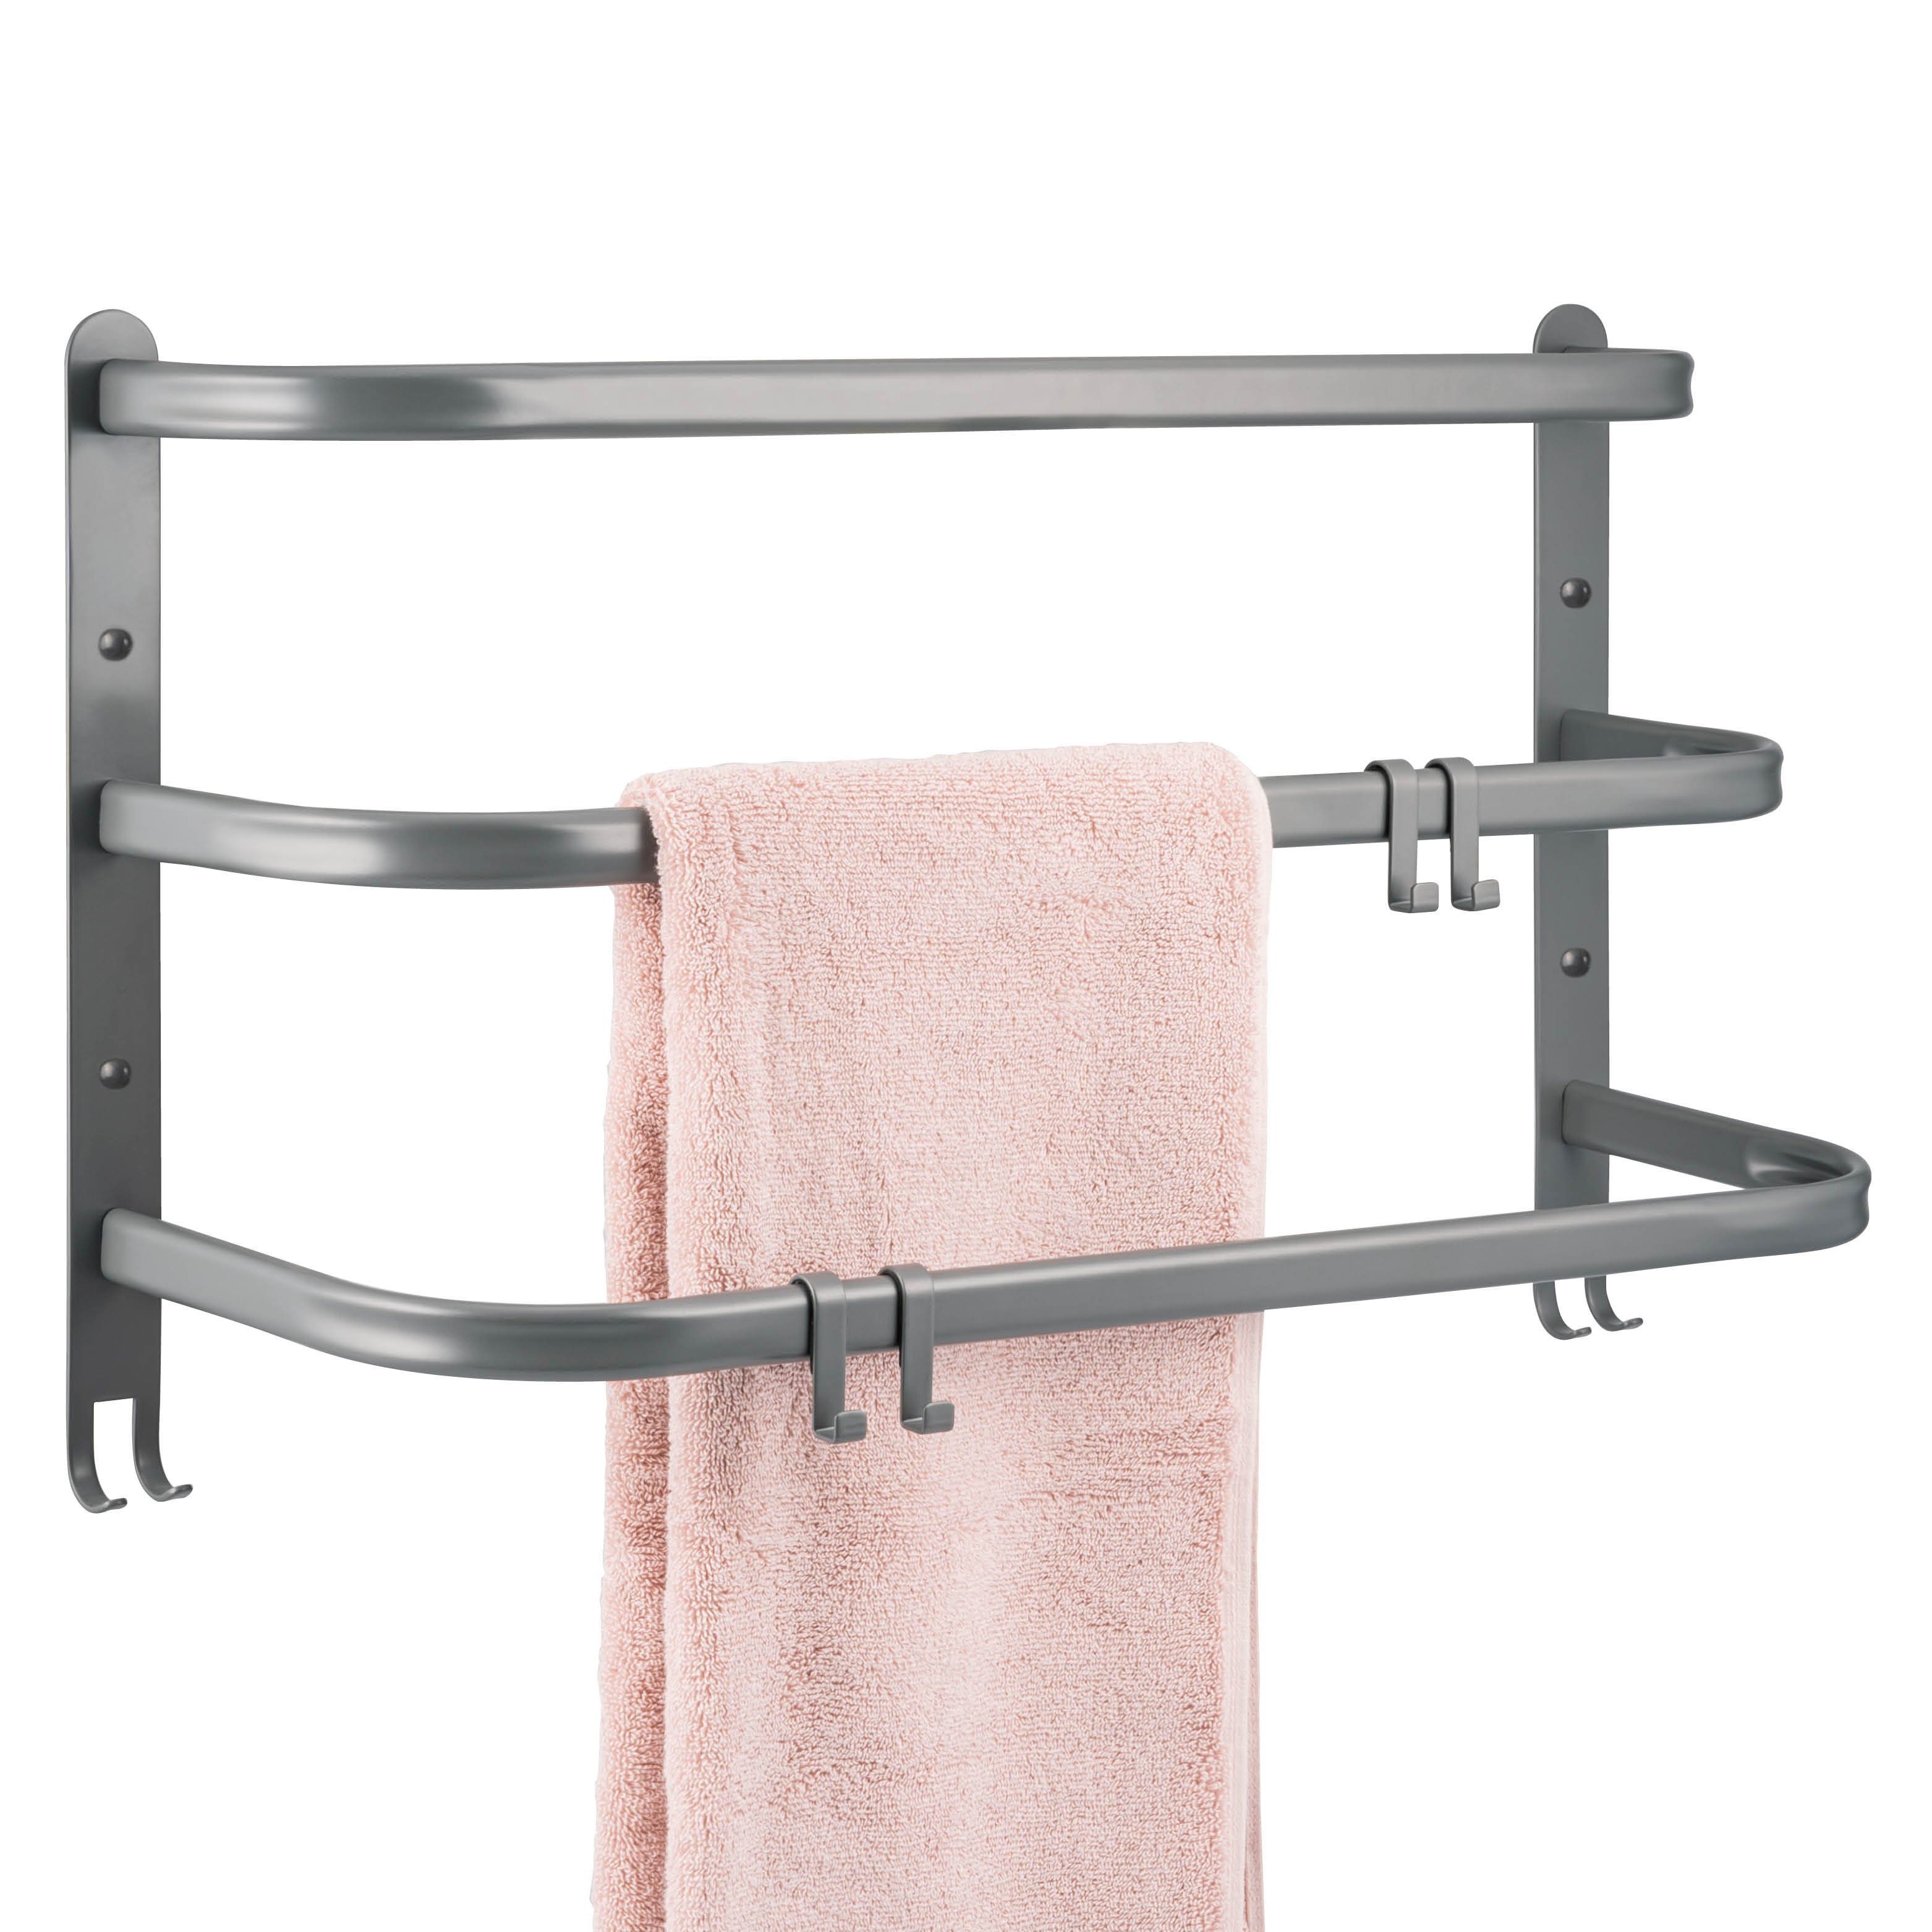 bremermann Handtuchhalter Wand-Handtuchhalter, 3 gestufte Ablagen, Handtuchstange, Wandmontage